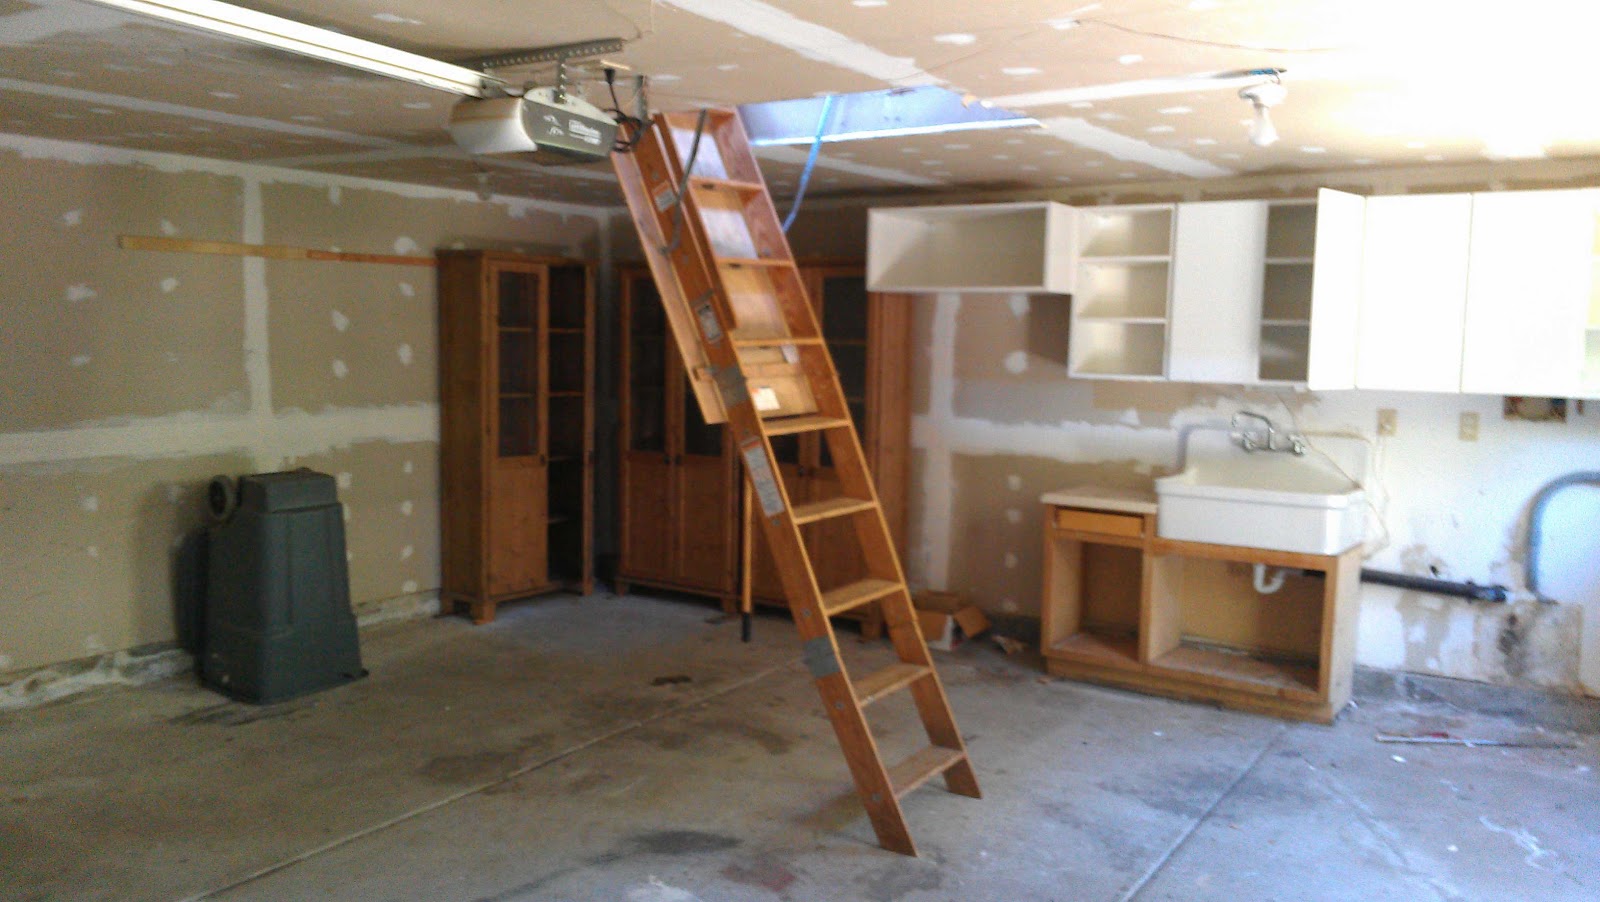 Garage With Ladder To Storage Loft